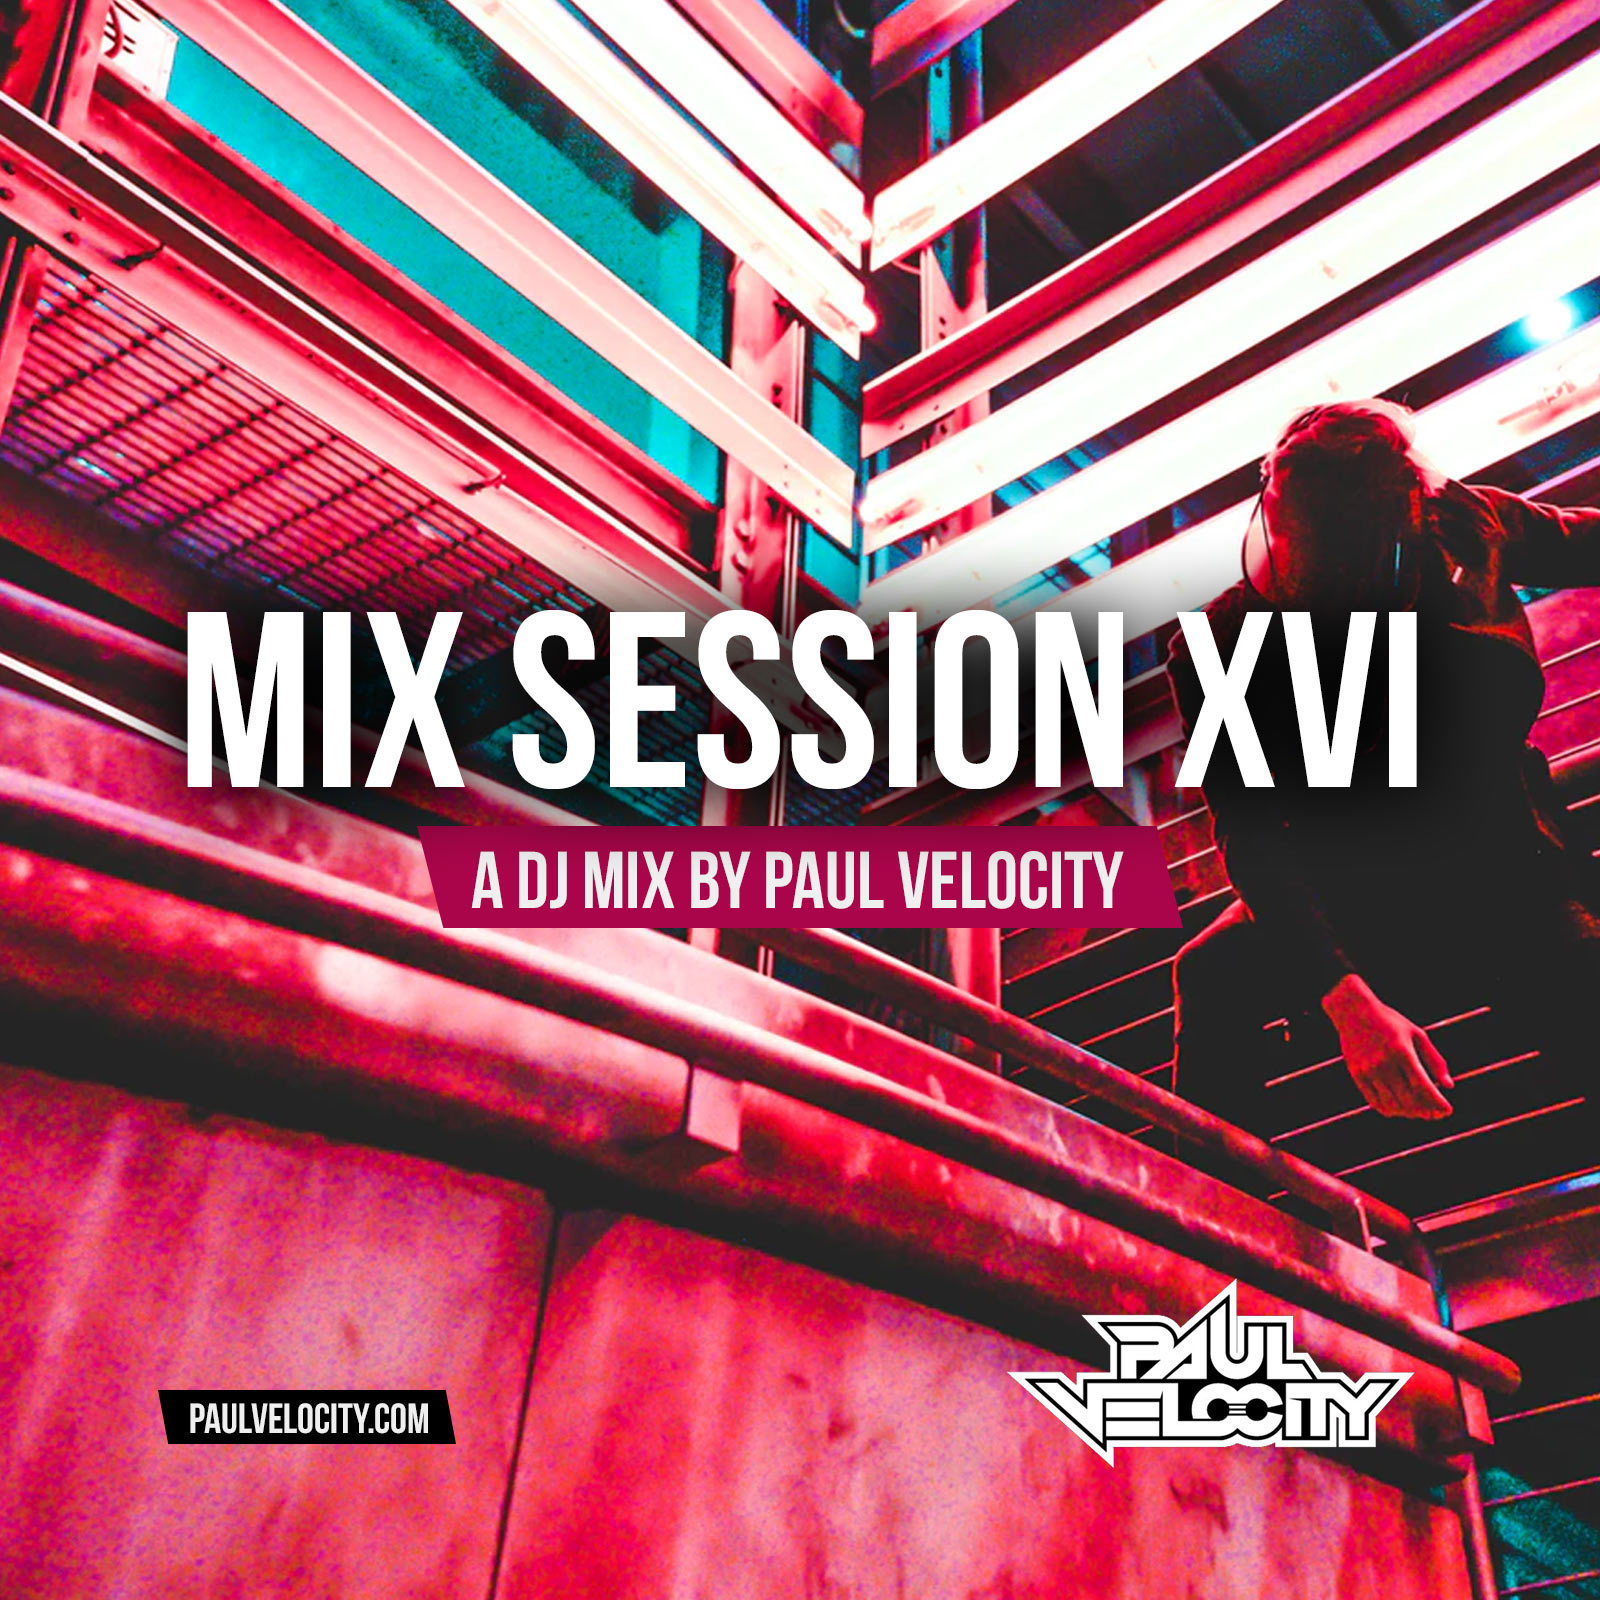 Mix Session XVI